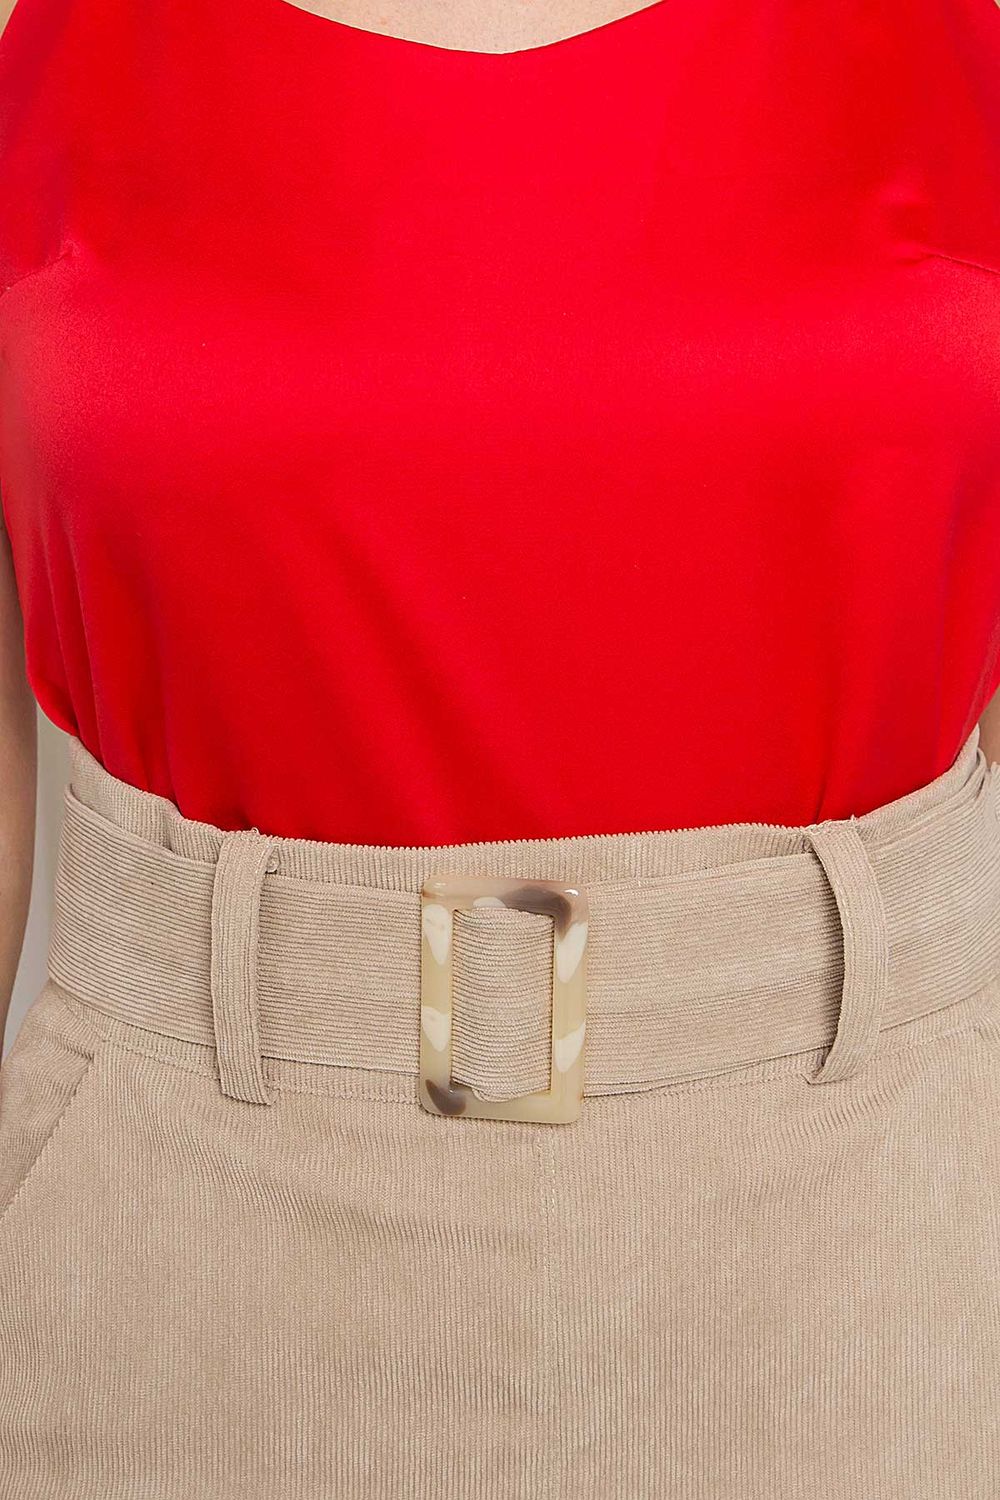 Вельветовая юбка карандаш бежевая - фото